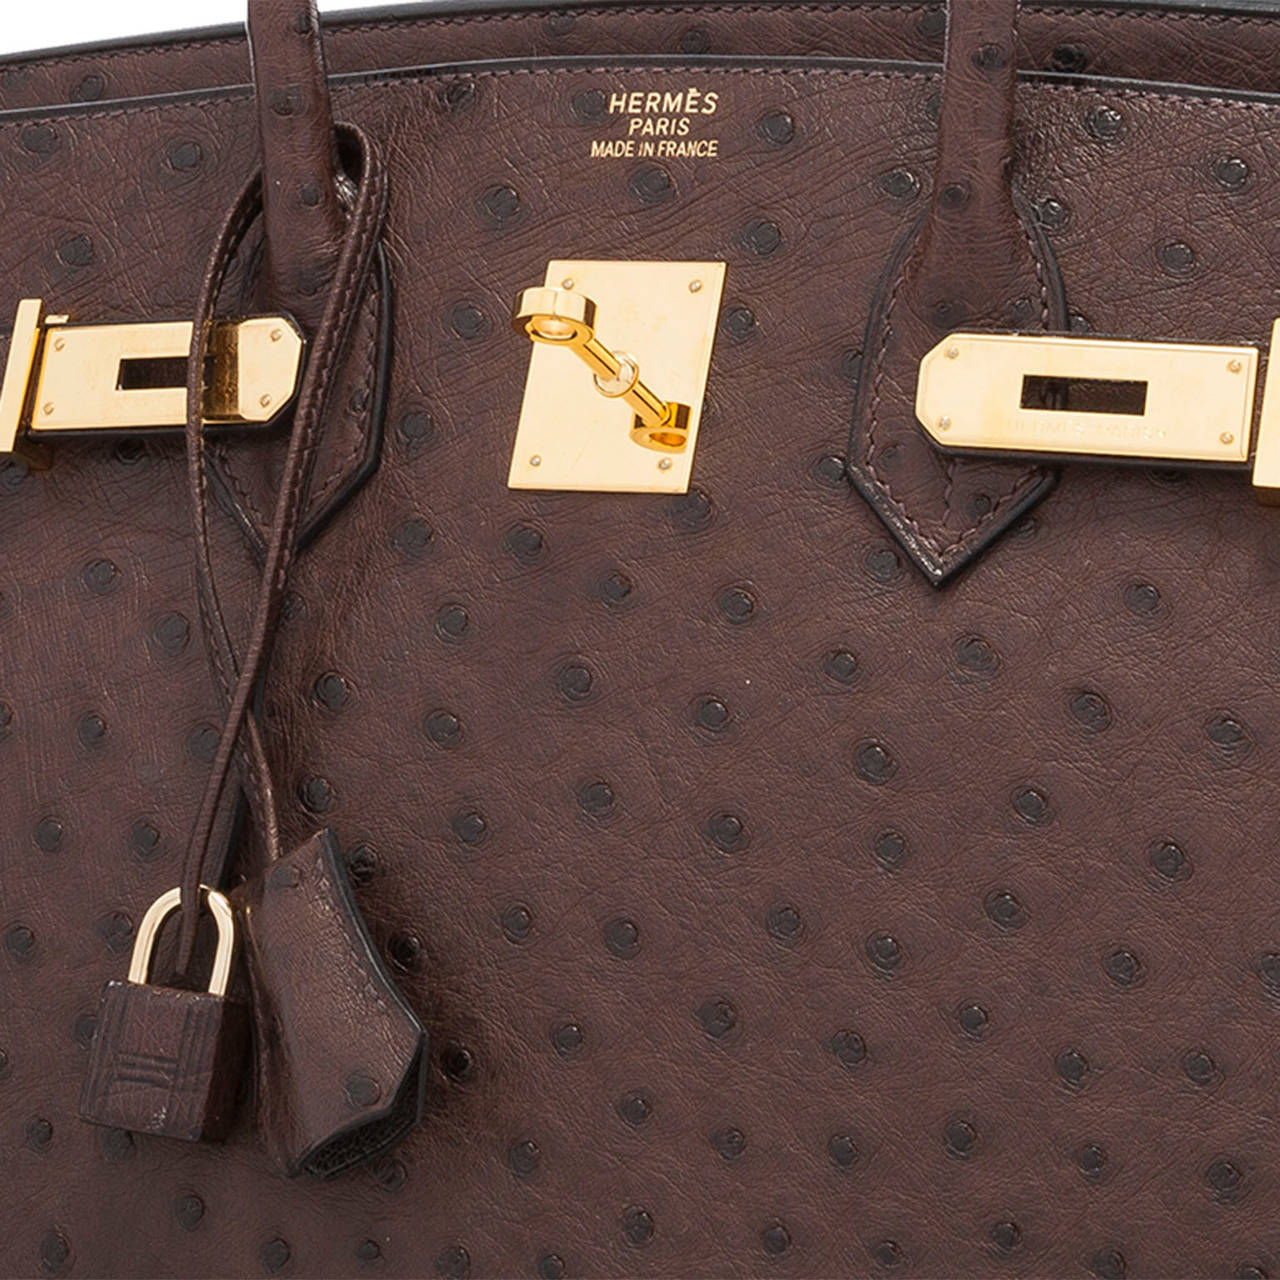 Hermes 35cm Havane Ostrich Birkin Bag with Gold Hardware For Sale 2